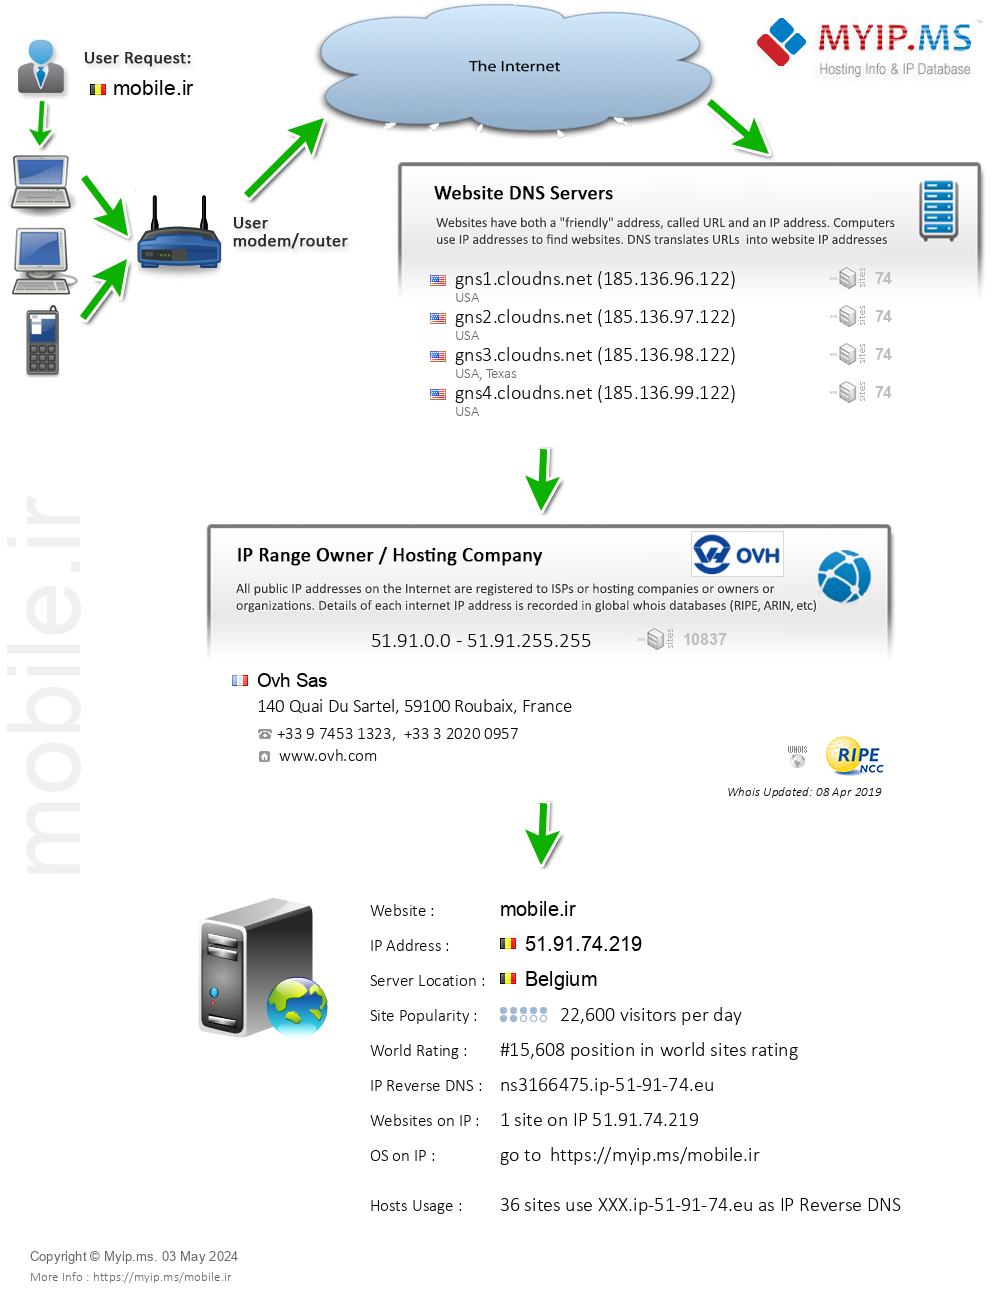 Mobile.ir - Website Hosting Visual IP Diagram